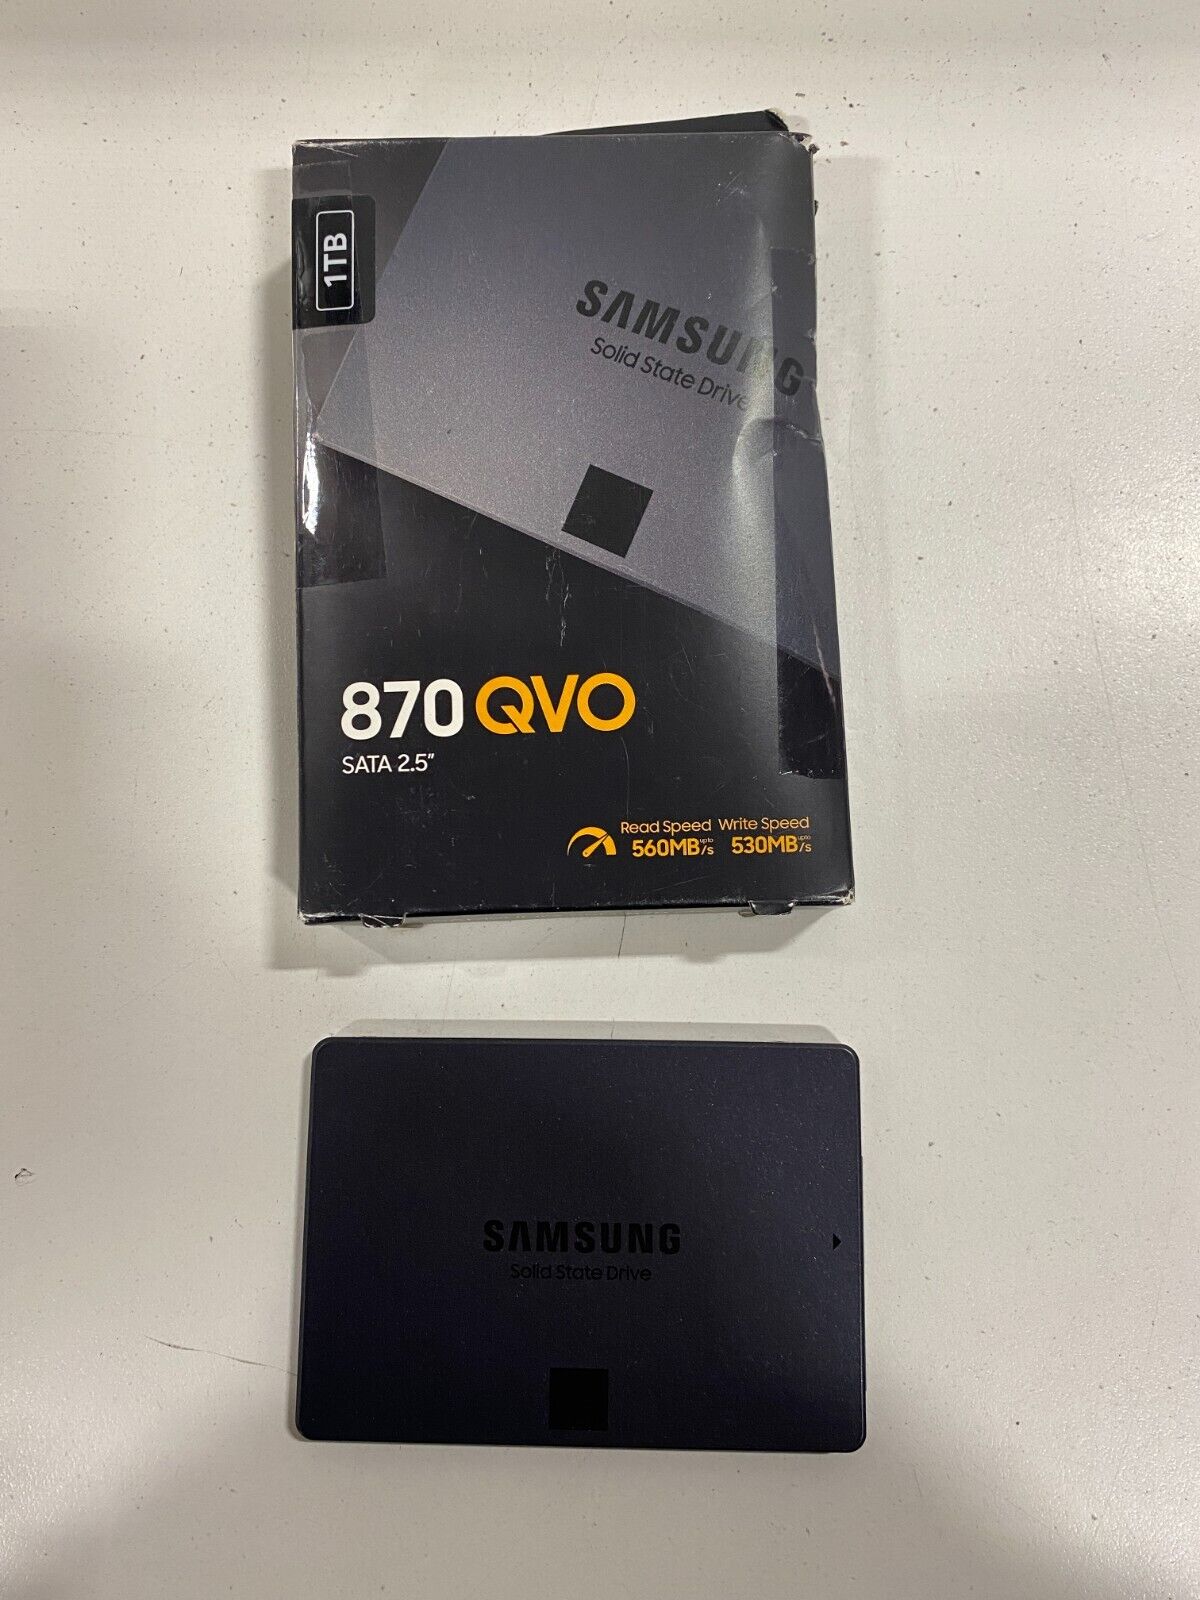 Samsung 870 QVO 1TB 2.5#034; SATA III Internal SSD (MZ-77Q1T0B/AM)  887276417882 eBay